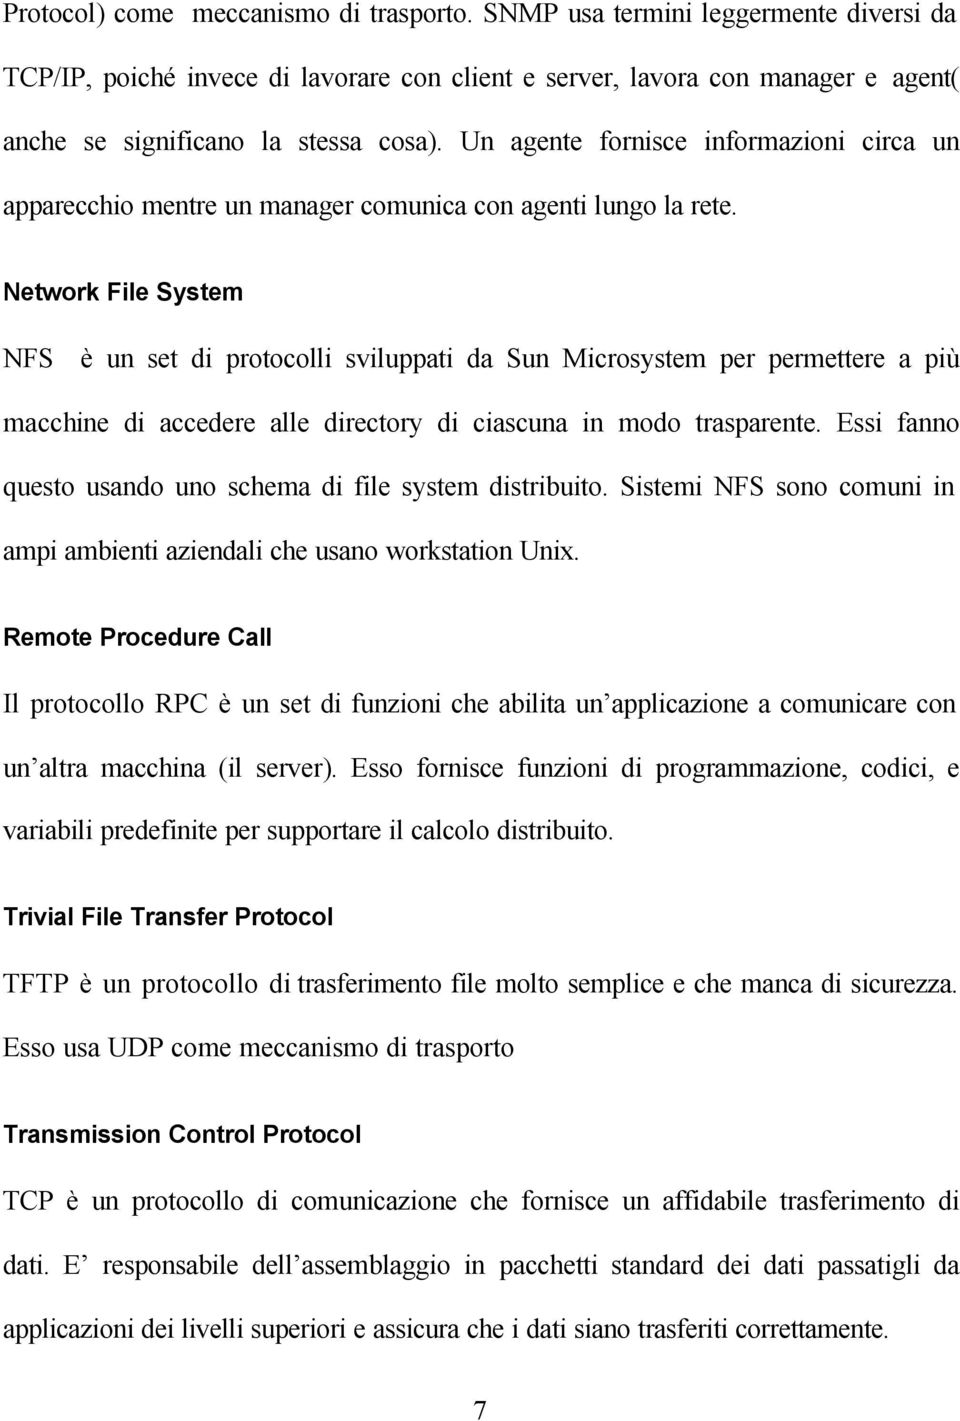 Network File System NFS è un set di protocolli sviluppati da Sun Microsystem per permettere a più macchine di accedere alle directory di ciascuna in modo trasparente.